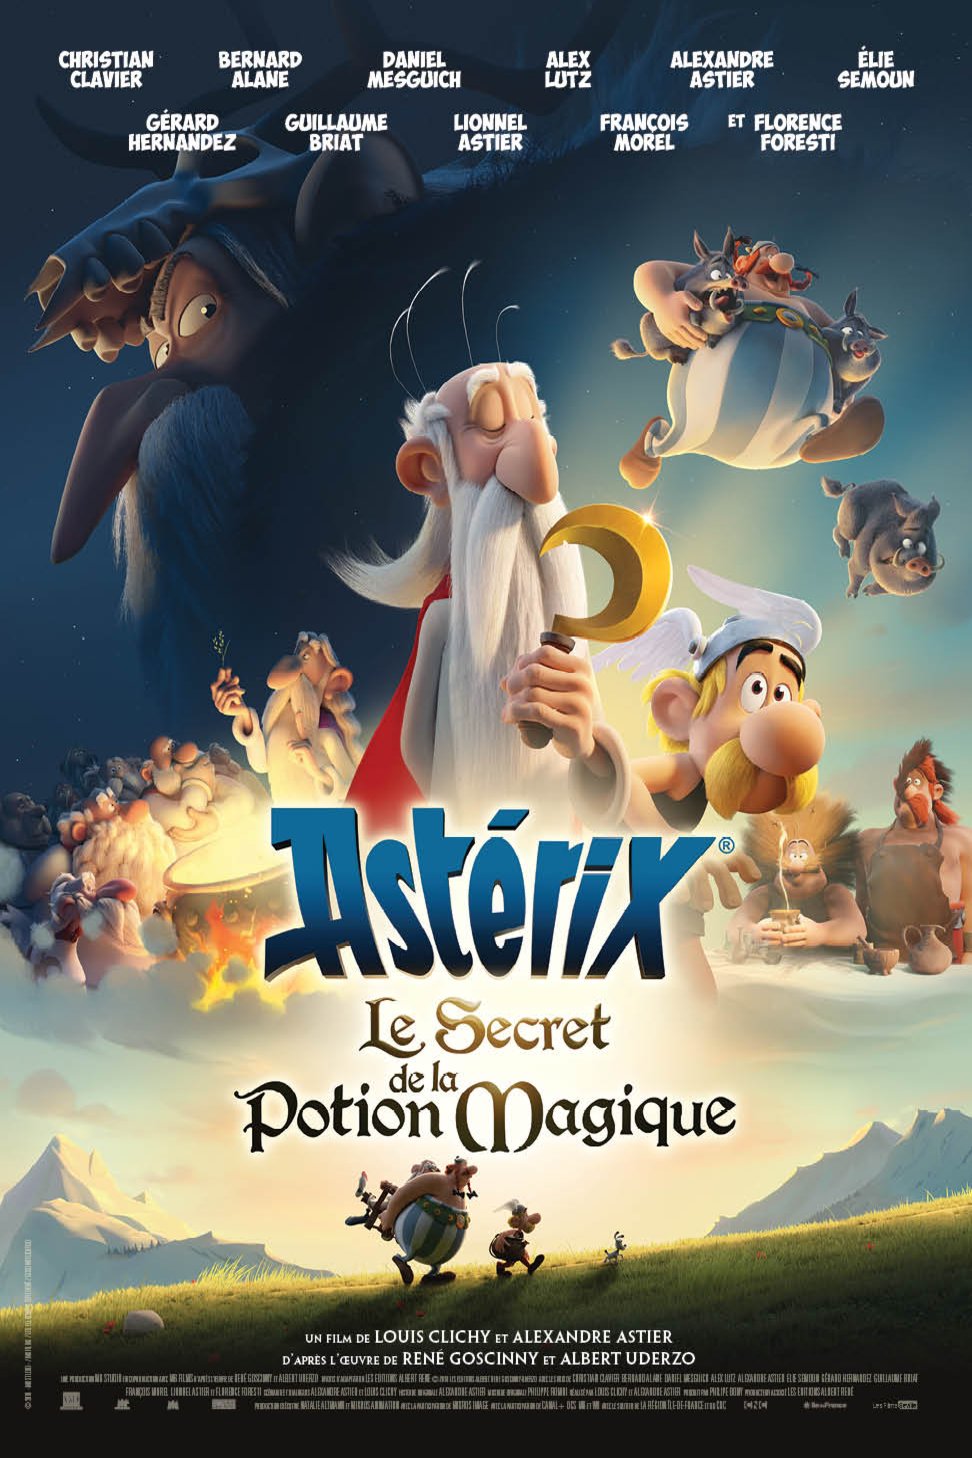 Poster of the movie Astérix: Le secret de la potion magique